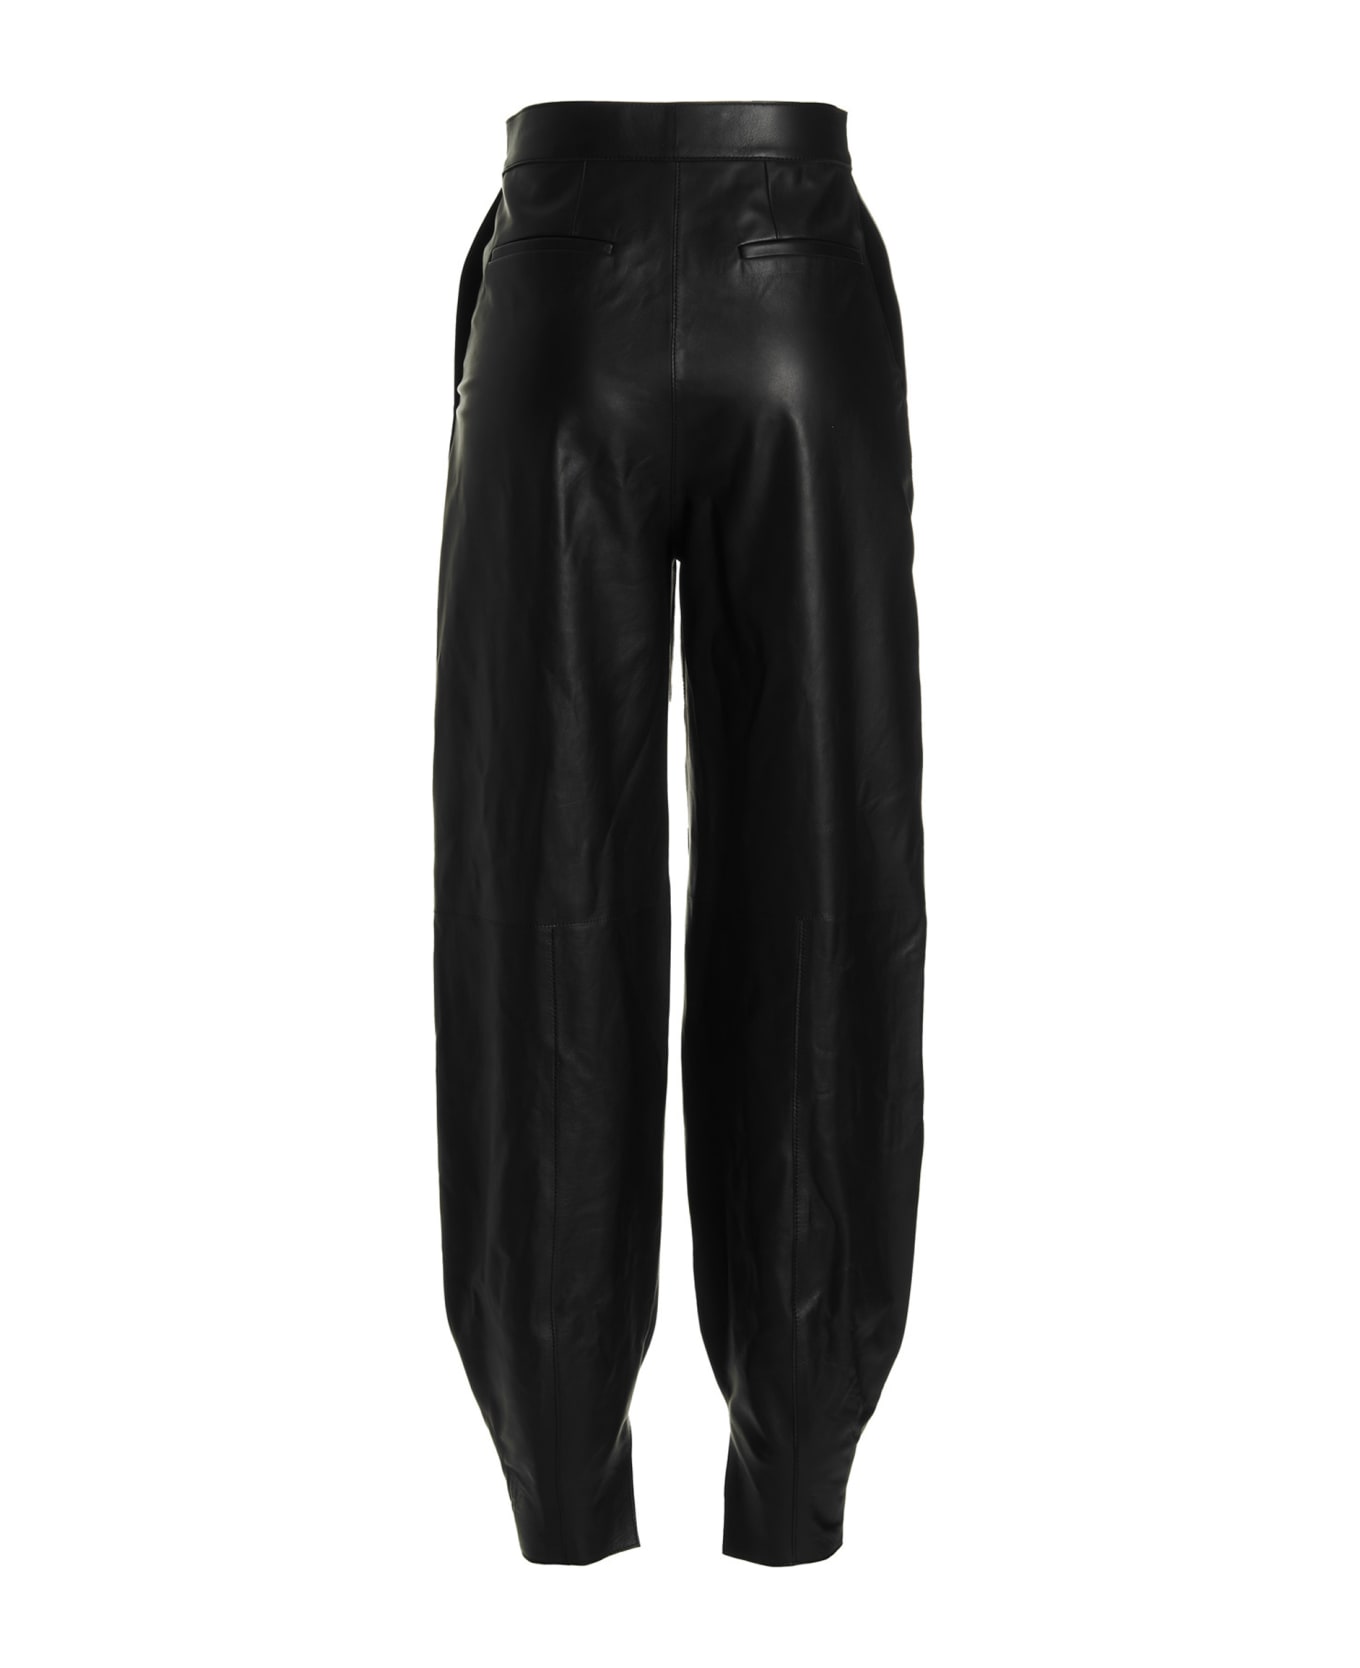 Loewe Leather Balloon-style Pants - Black  